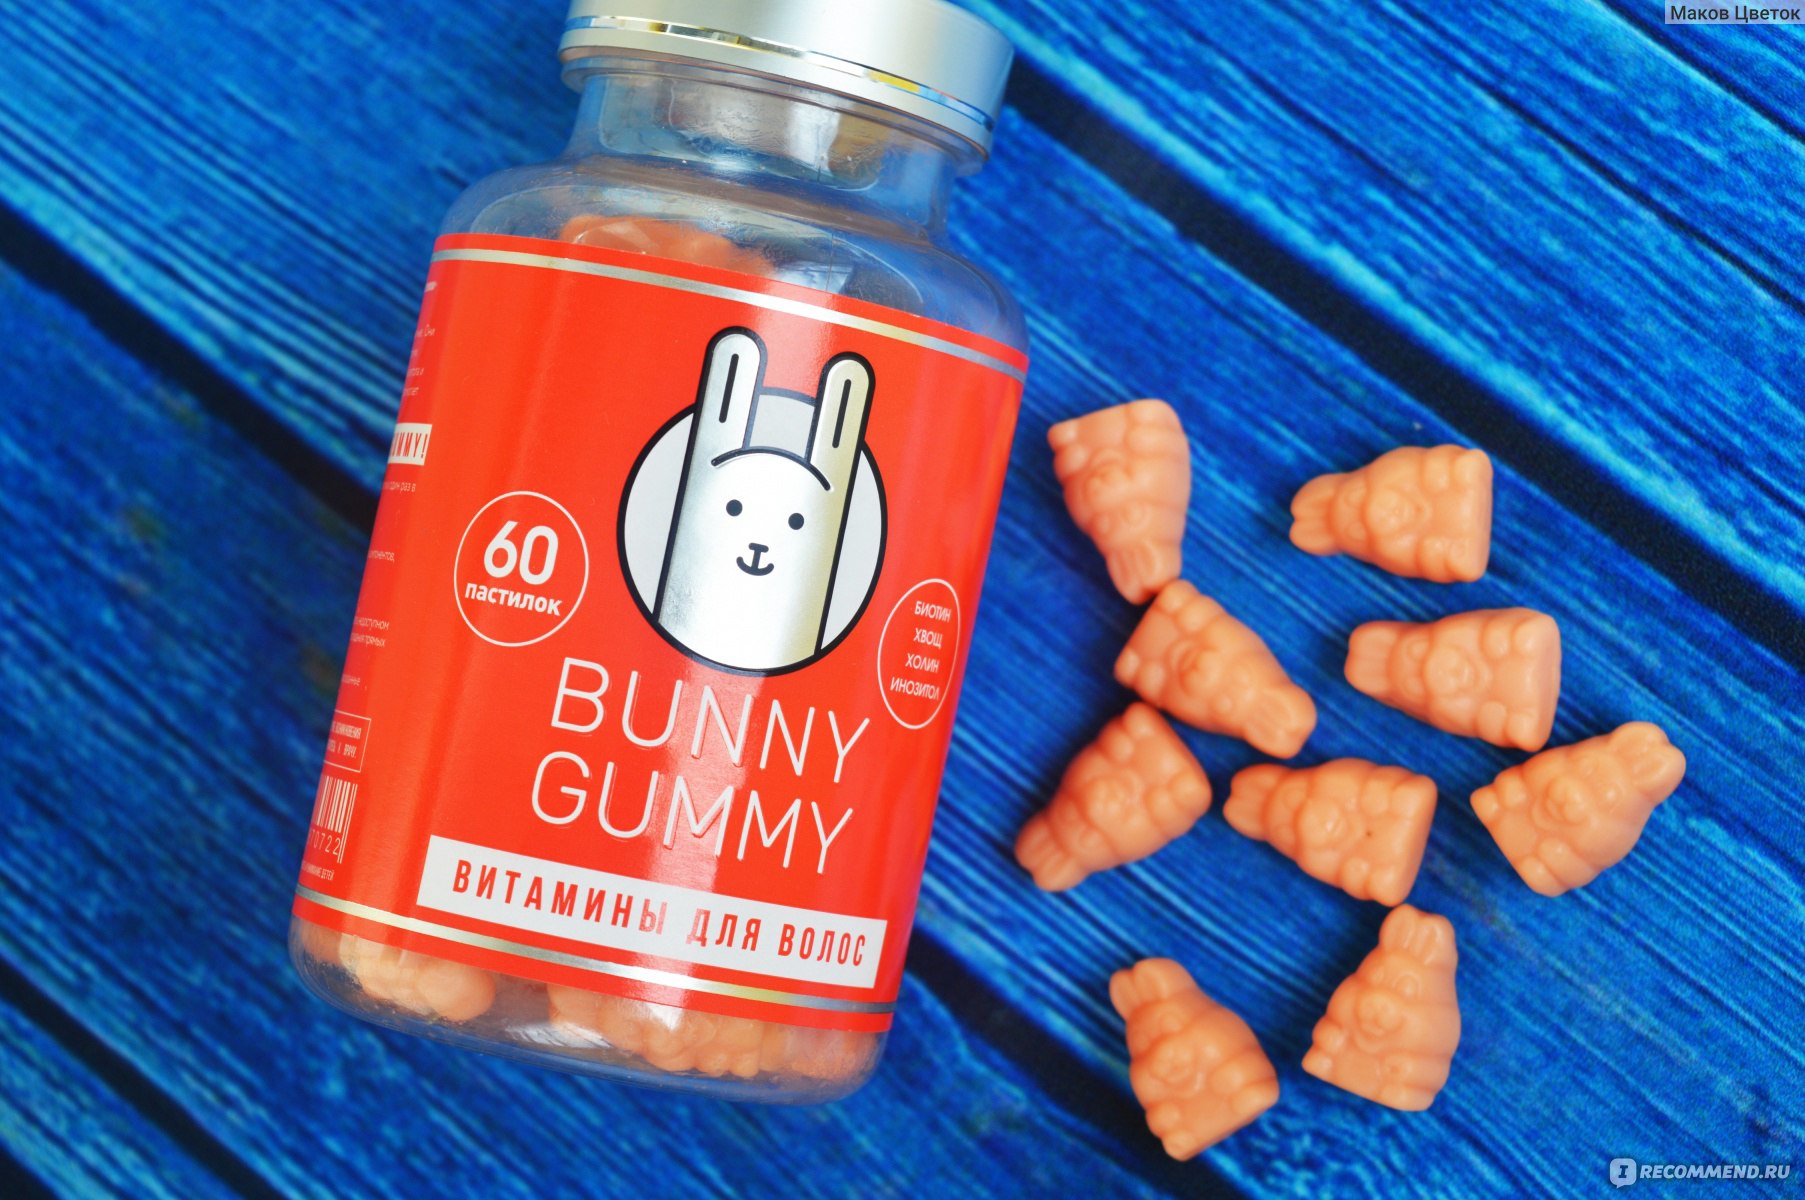 Bunny Gummy - витамины для волос, которые РАБОТАЮТ! 